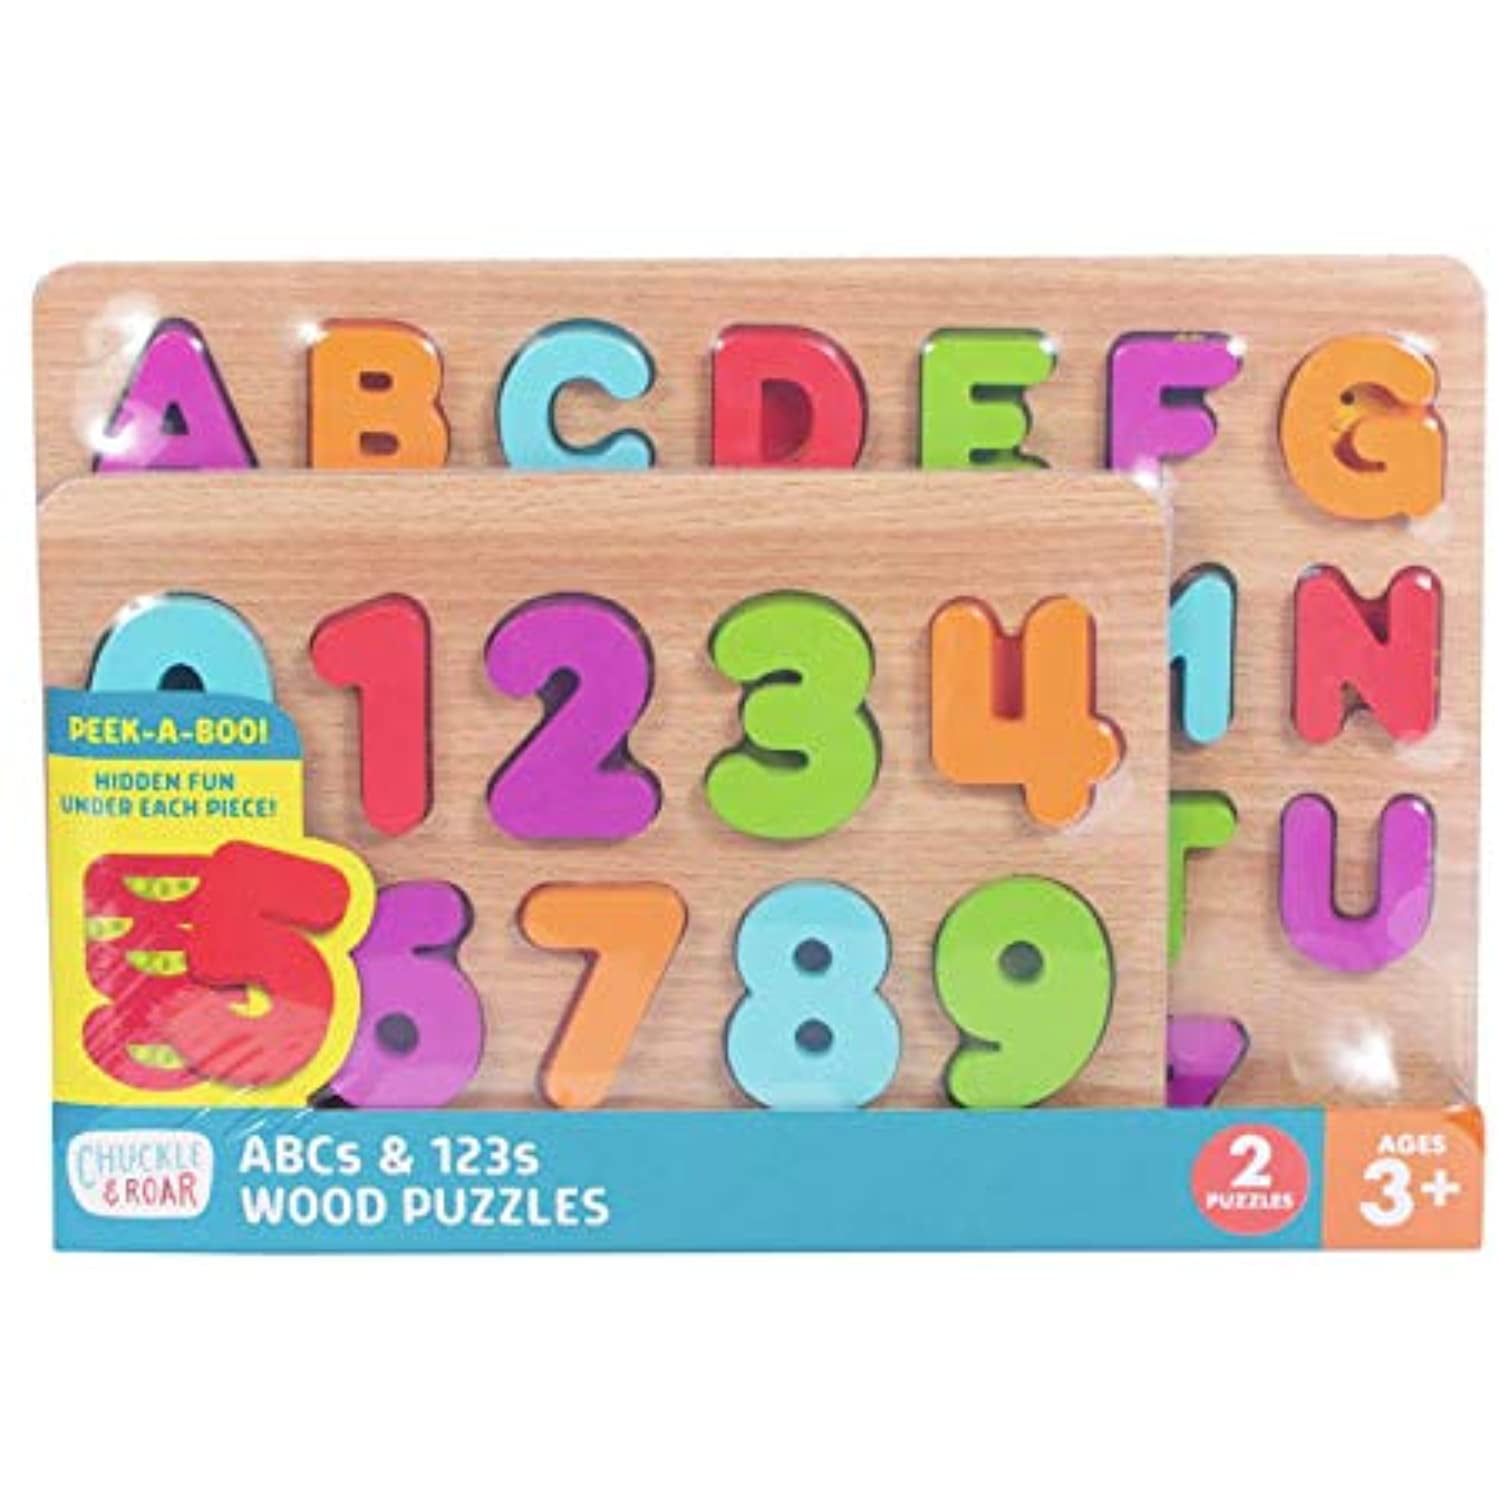 Chuckle & Roar ABC's & 123s Wood Kids Puzzle Set 36pc